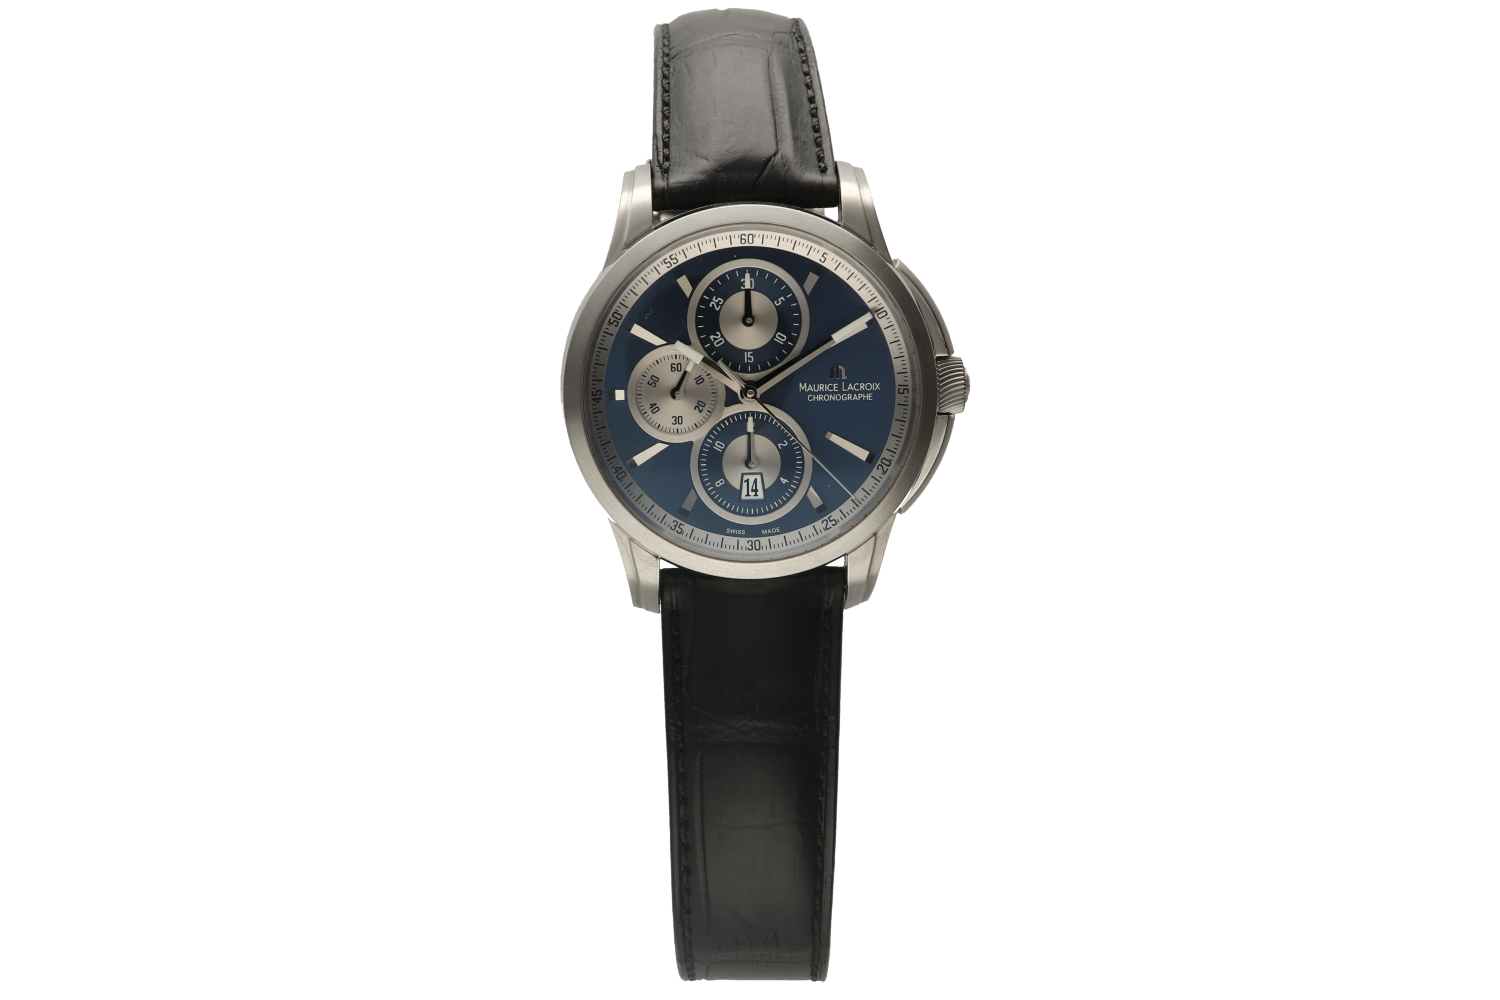 Ρολόι ανδρικό Maurice Lacroix PONTOS PT6188-SS001-430 σε ατσάλι με μπλε καντράν, με χρονογράφο, αυτόματο open back με λουράκι 